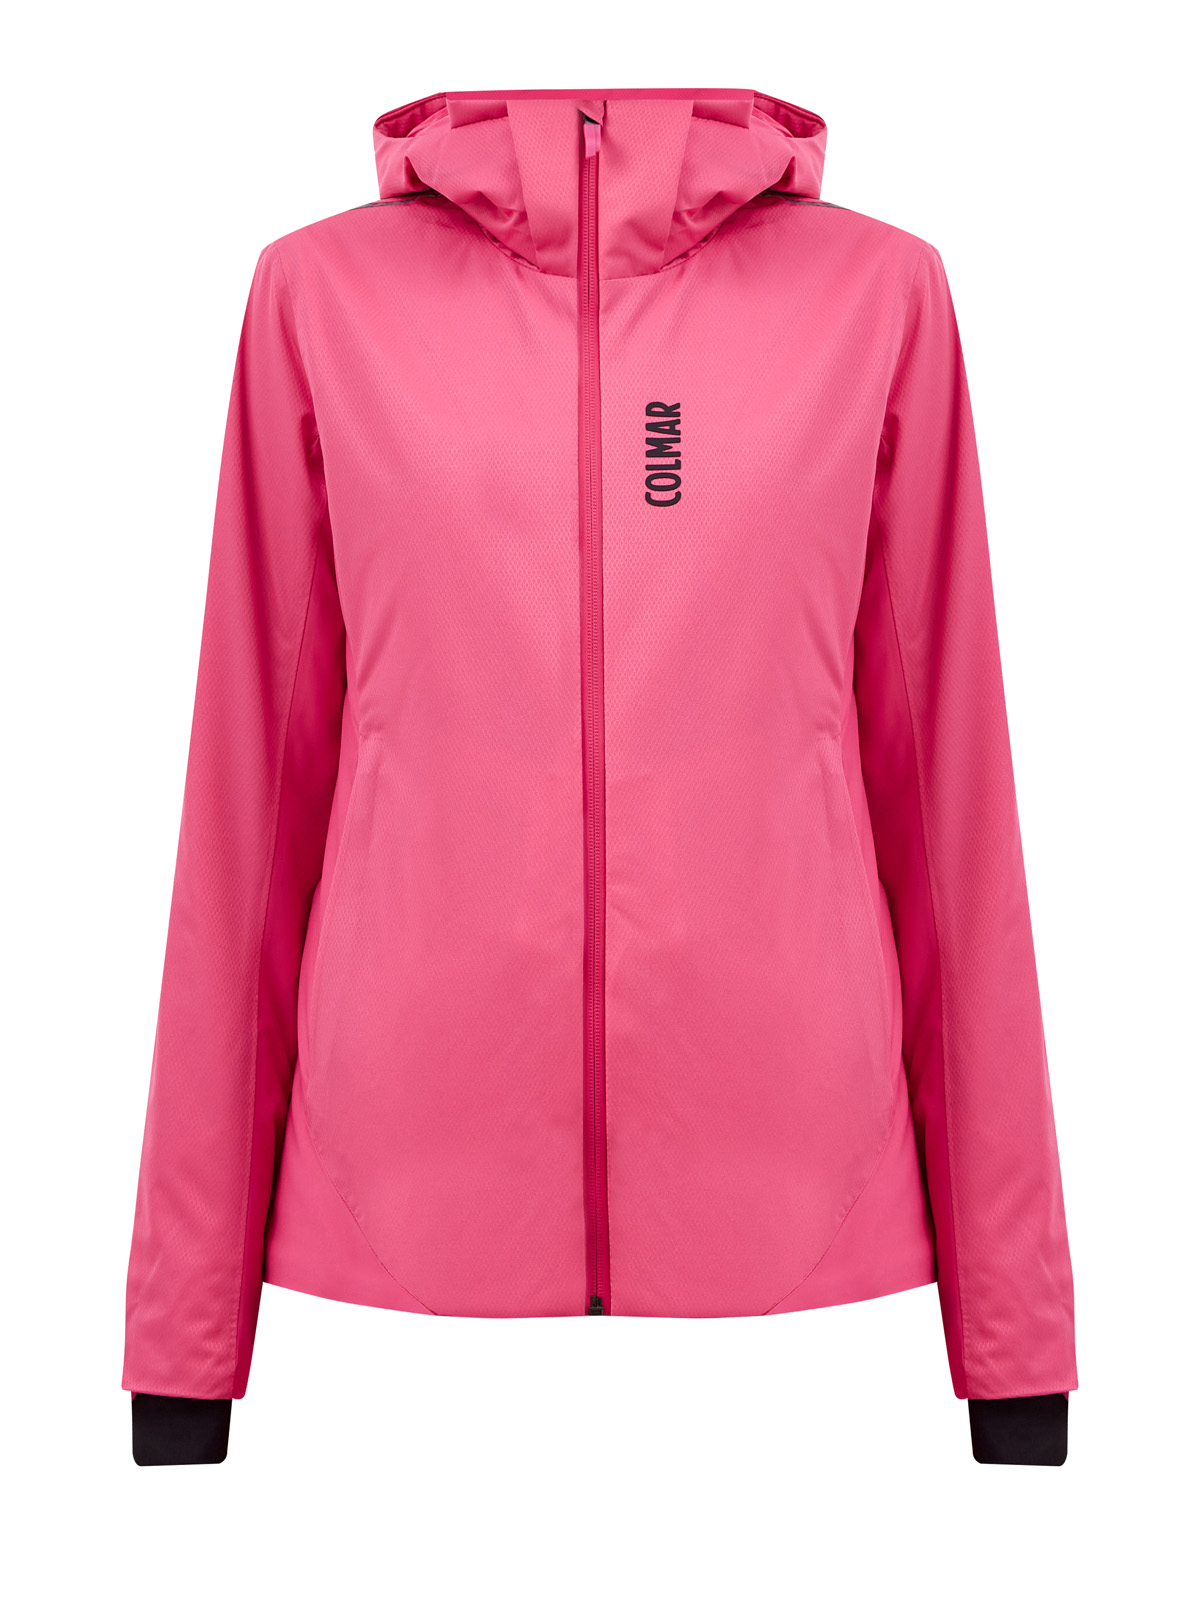 Куртка с эко-утеплителем Clo® Univa и съемным капюшоном COLMAR розового цвета